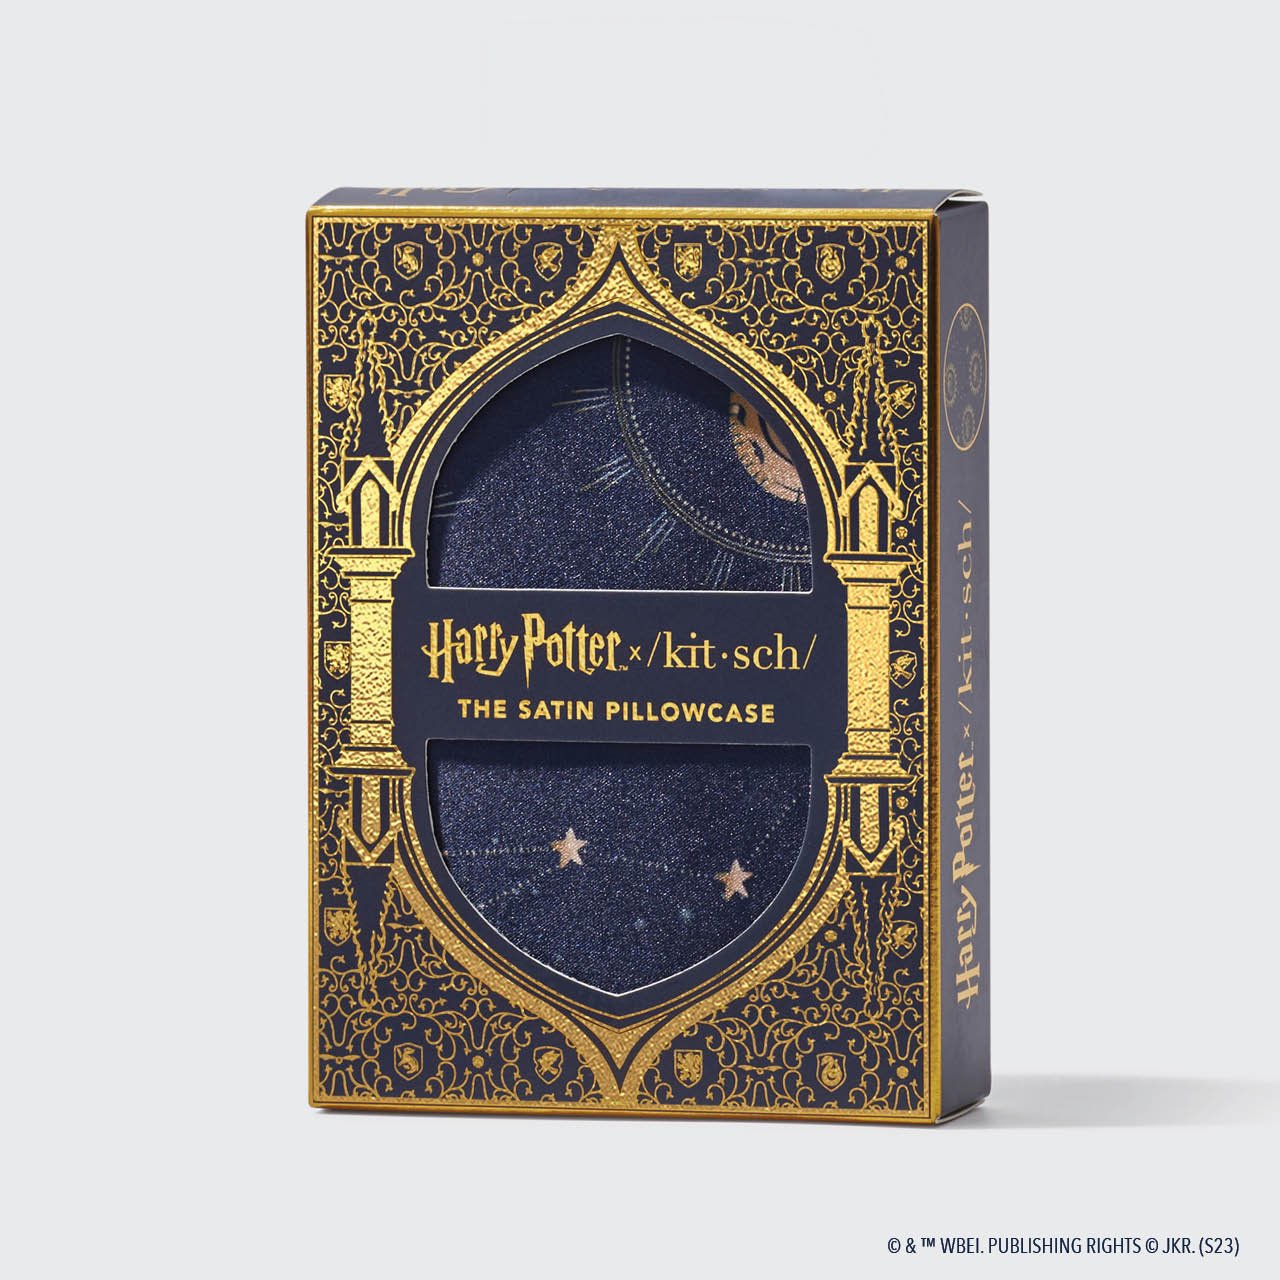 Harry Potter x Kitsch Paquete de coleccionista